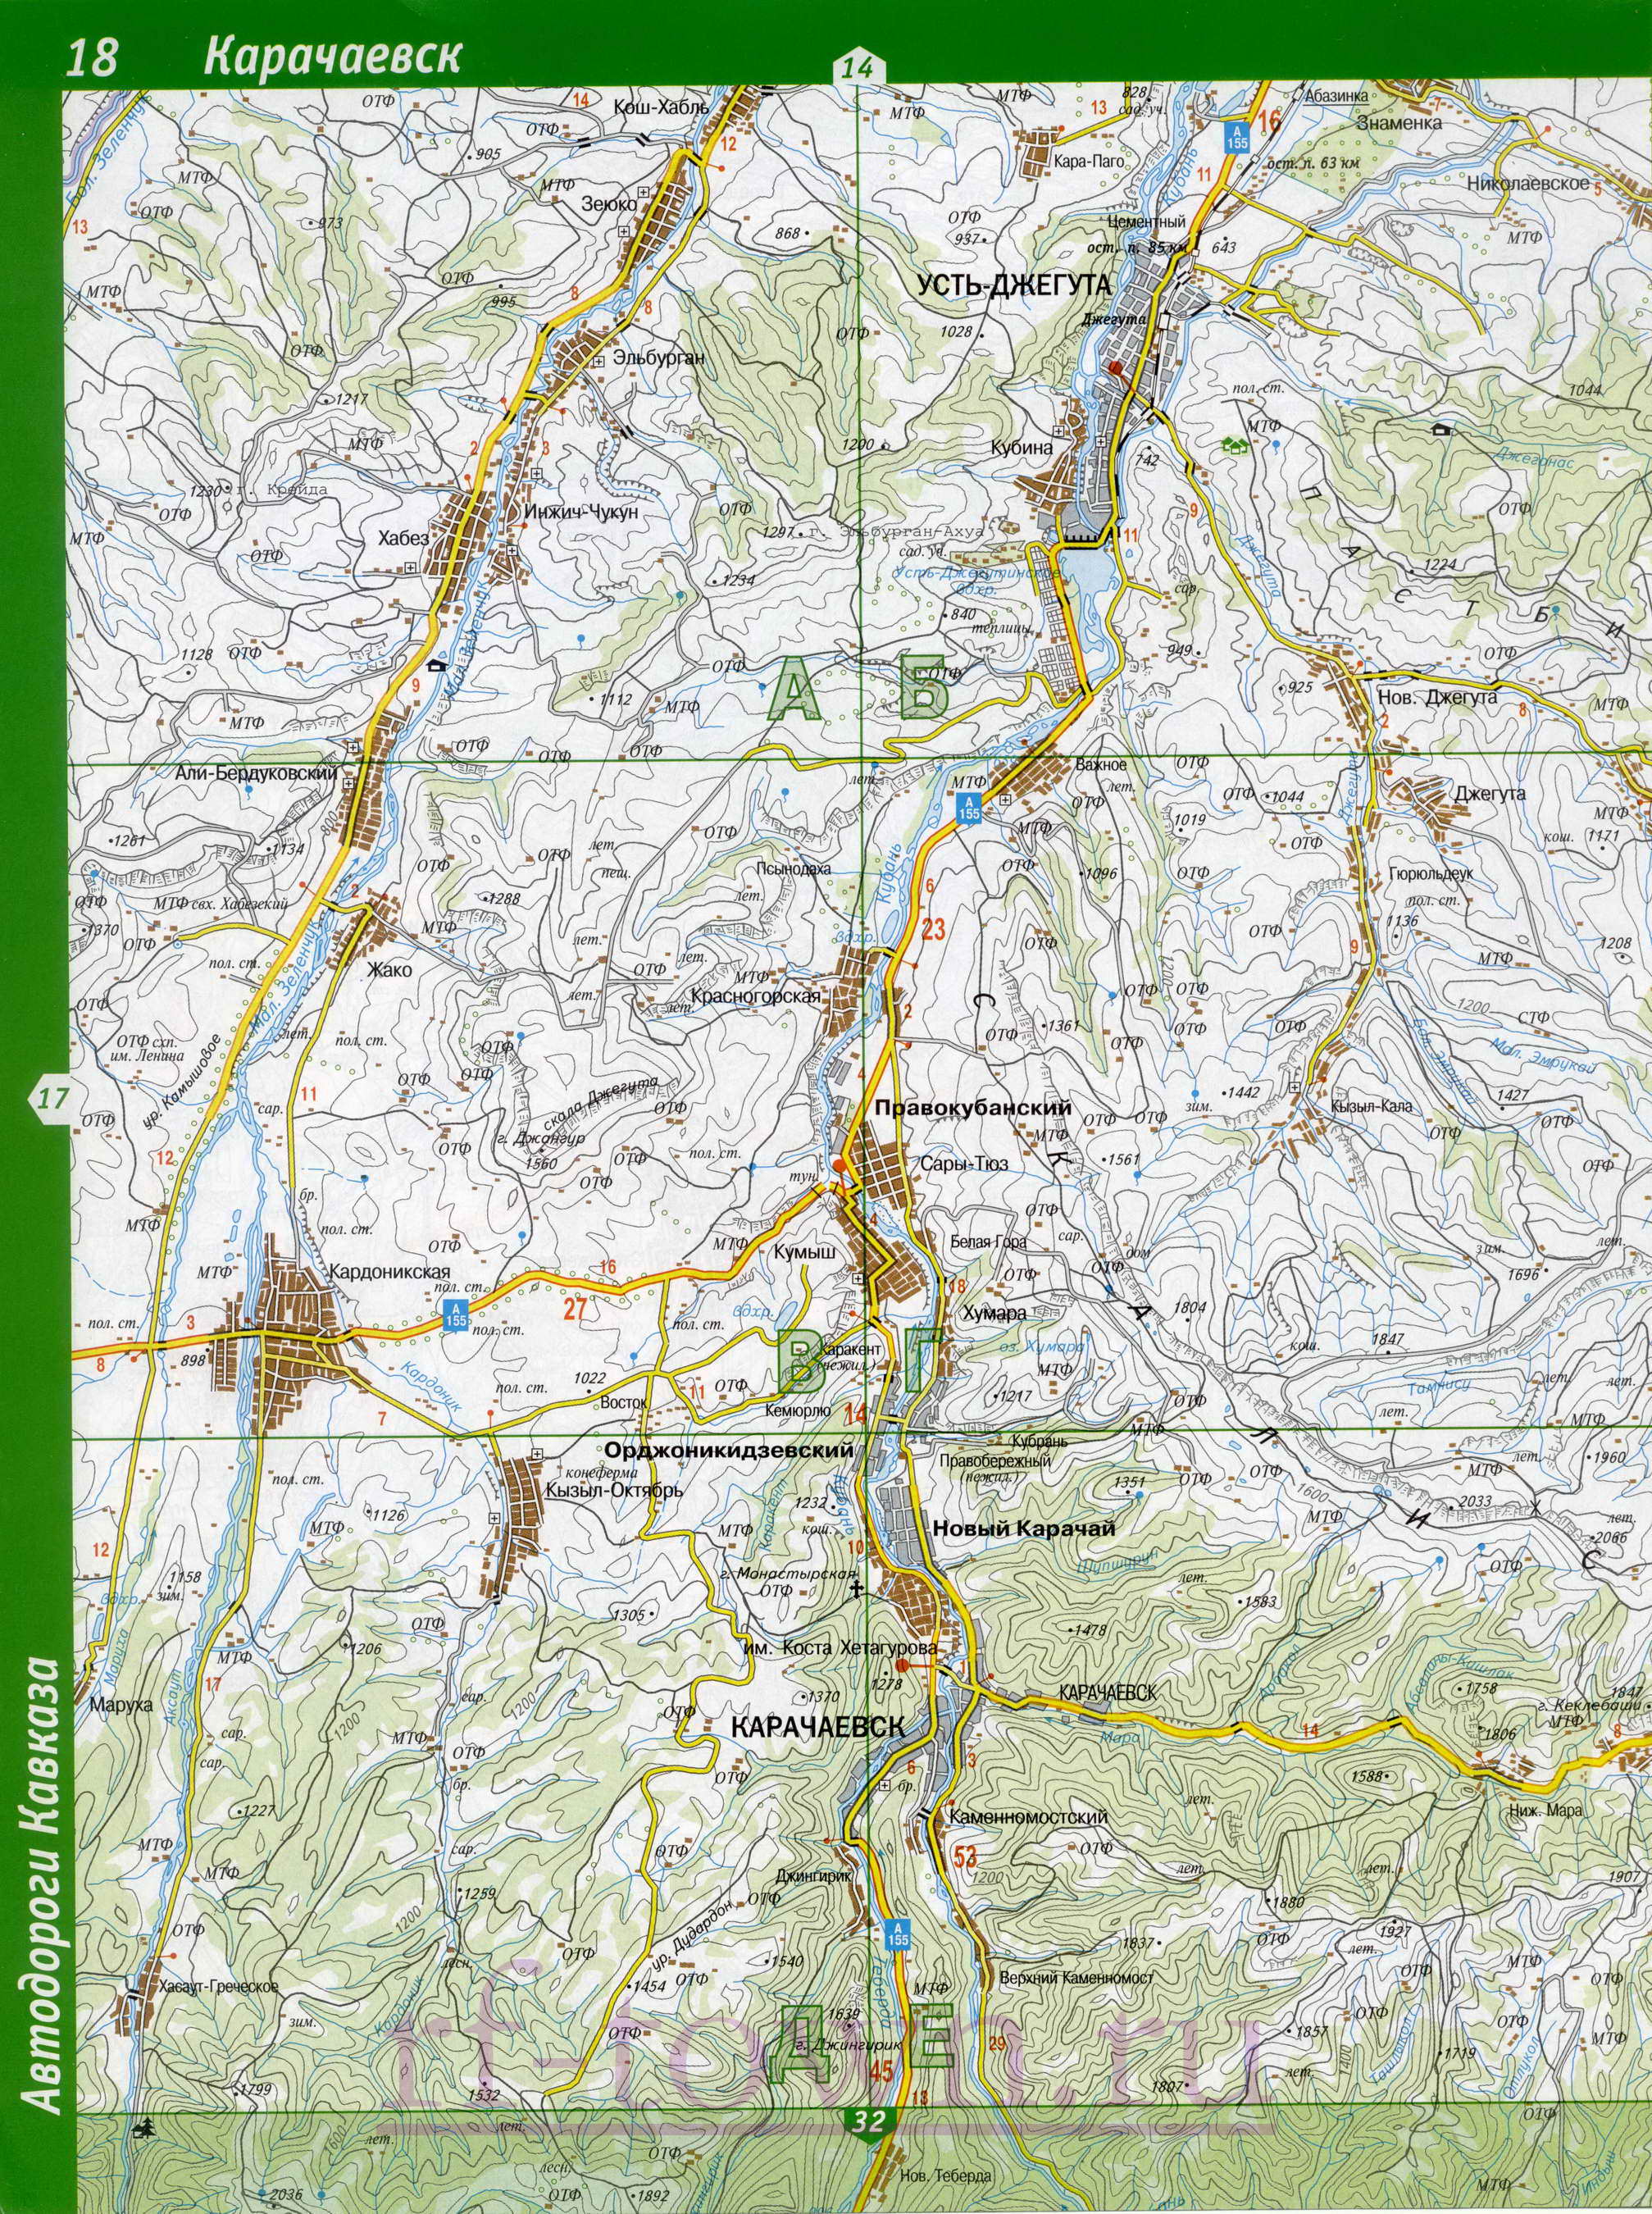 Карта Карачаево-Черкесии. Республика Карачаево-Черкесия - подробная топографическая карта масштаба 1см:2км, C1 - 